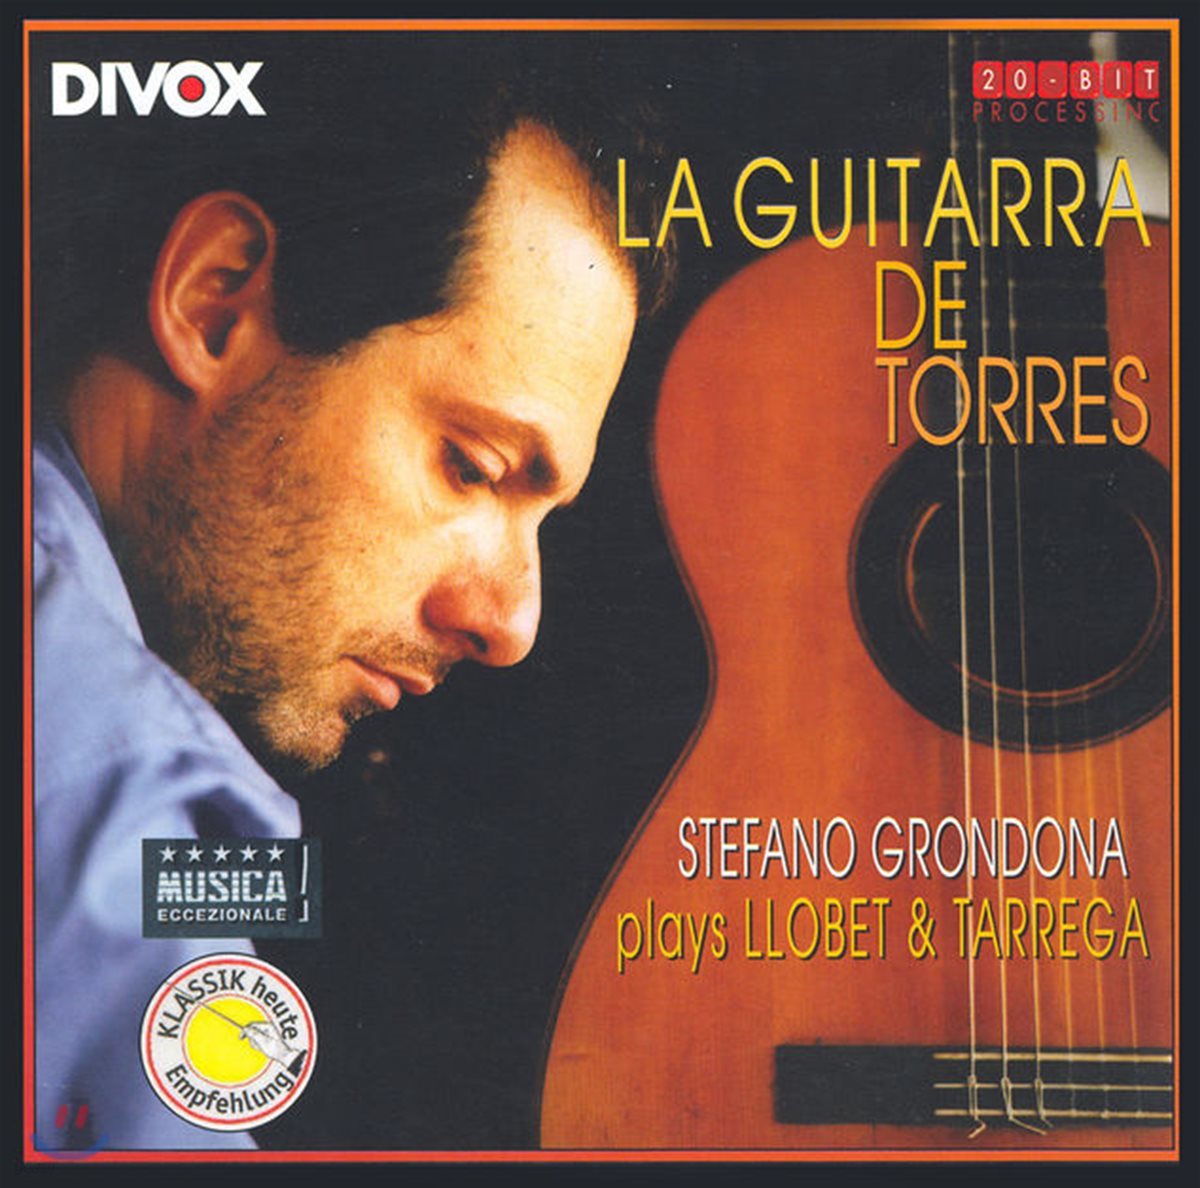 Stefano Grondona 타레가와 로베트의 기타 작품집 (M.LlobetㆍF.Tarrega: La Guitarra De Torres)